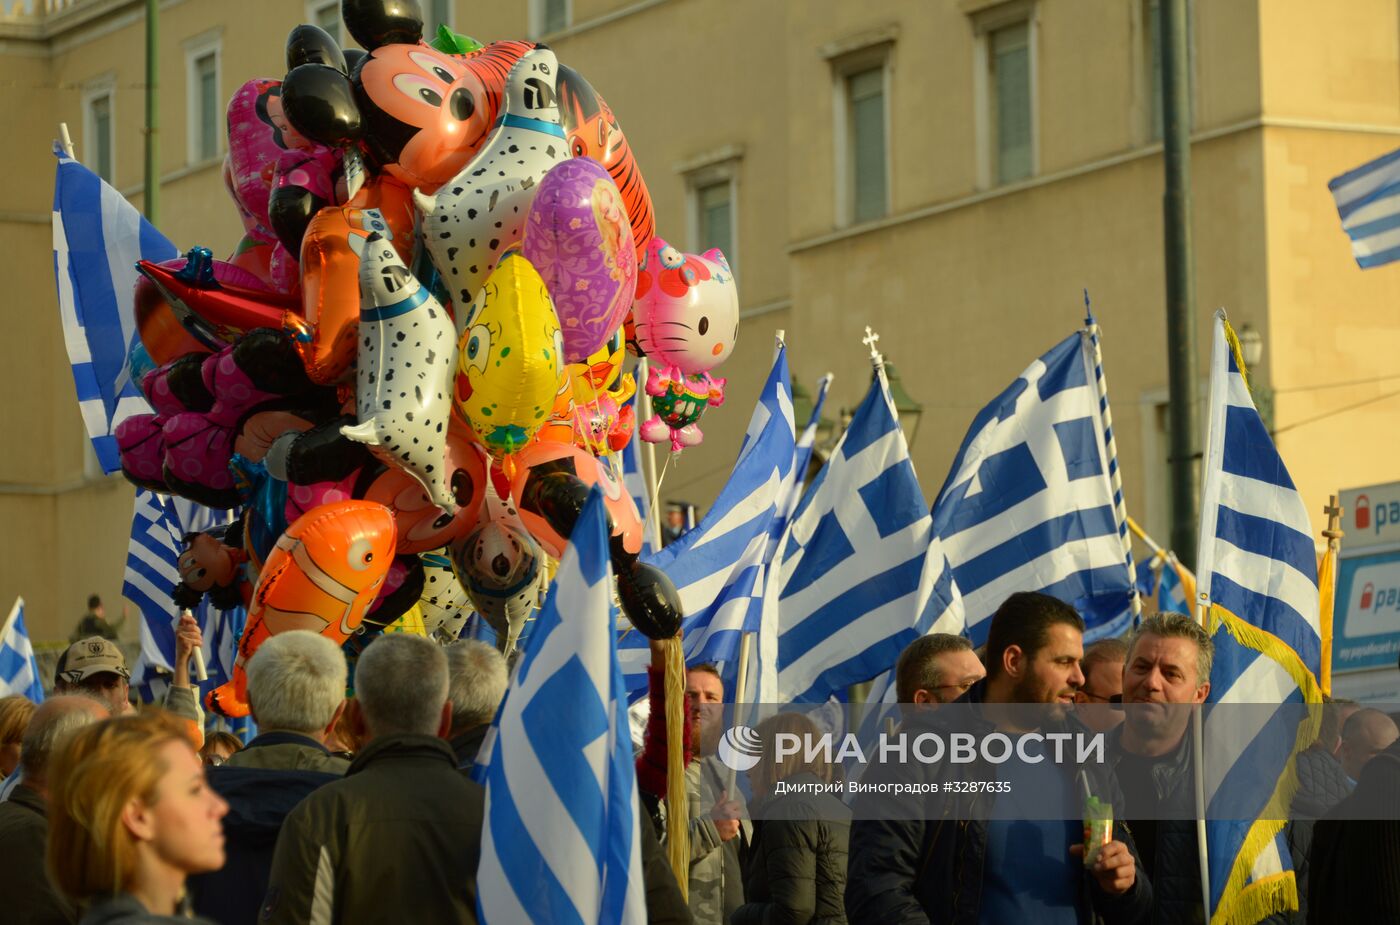 Митинг "Македония - это Греция" в Афинах